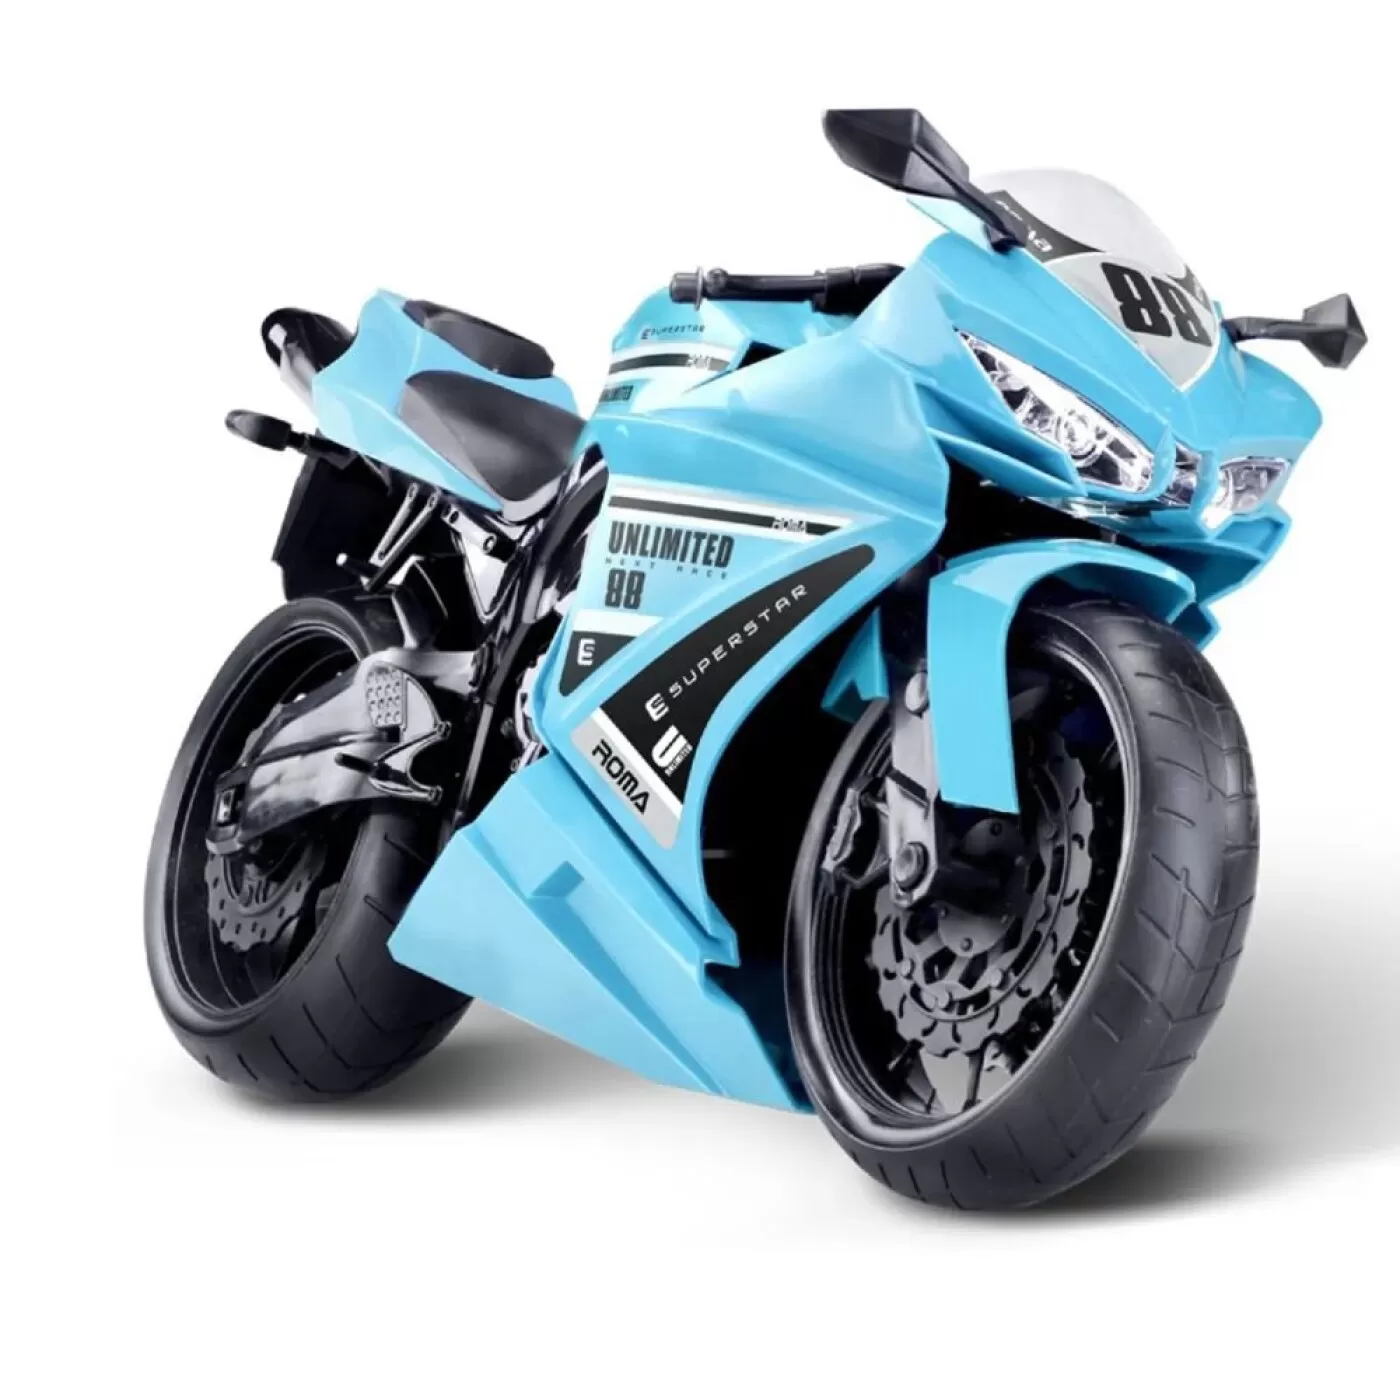 Moto Racer Corrida Motor C/ Som Motoca Fricção Azul Lider - Ailos Apro